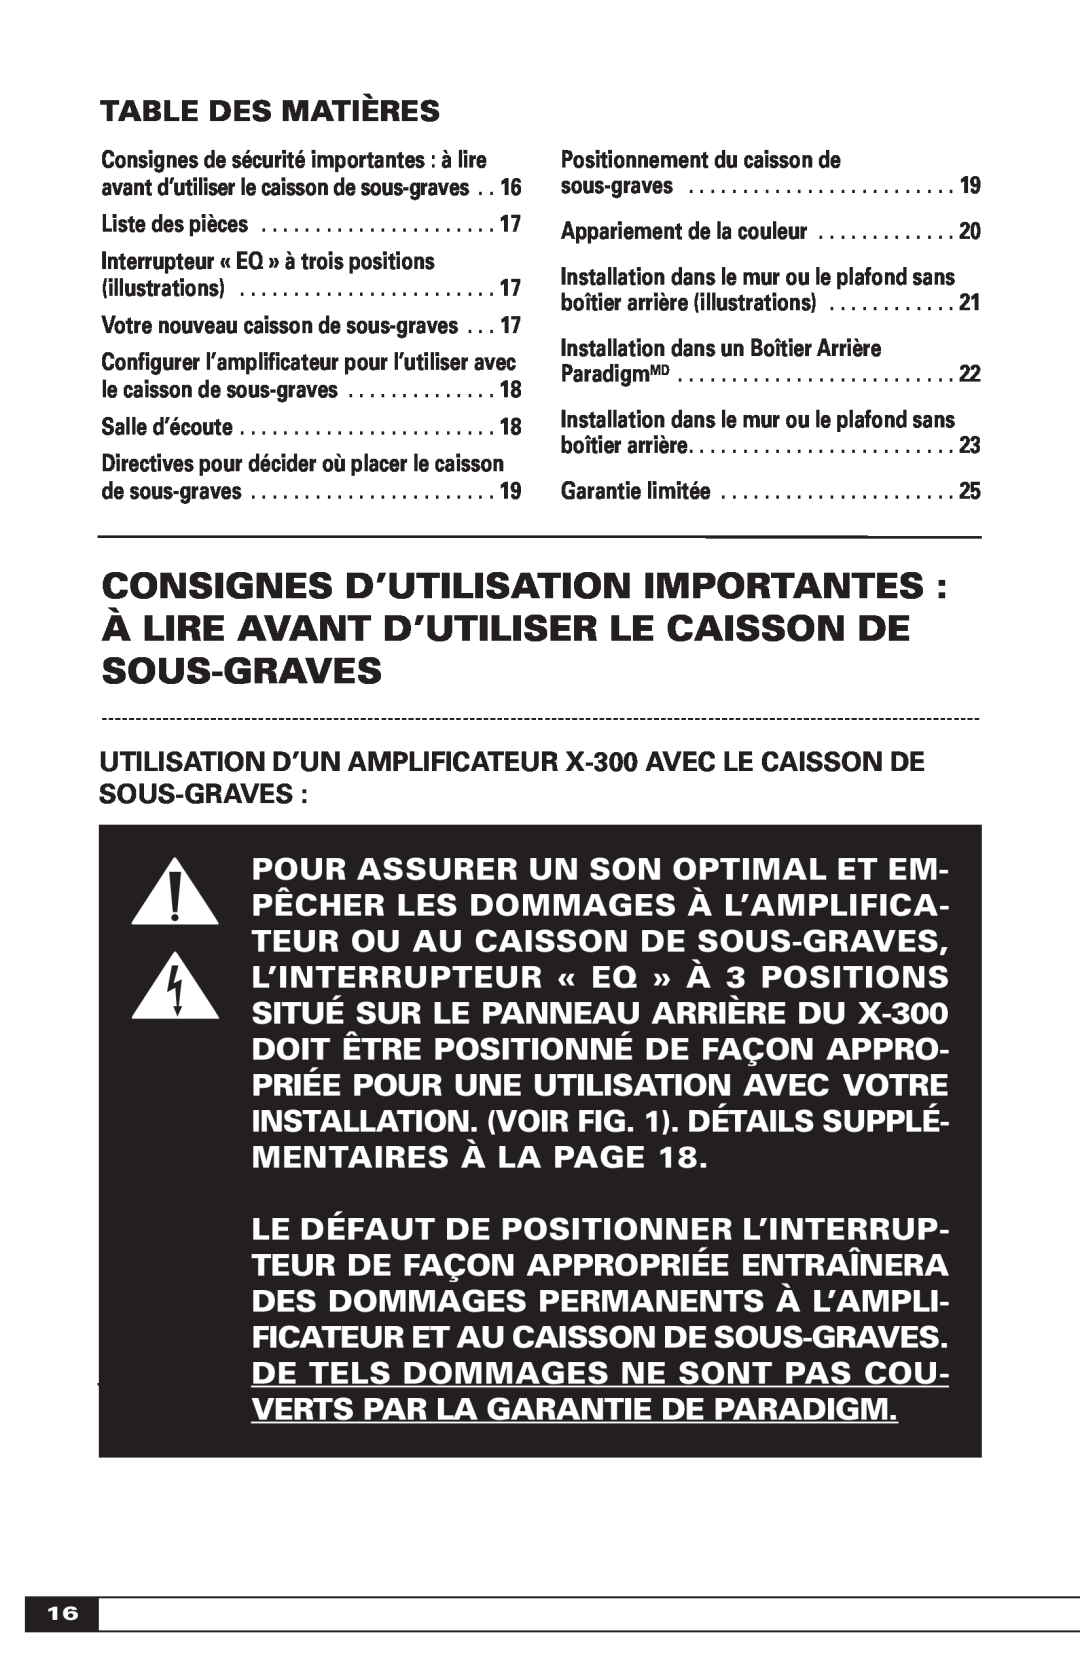 Paradigm OM-600 Consignes D’Utilisation Importantes, Àlire Avant D’Utiliser Le Caisson De Sous-Graves, Table Des Matières 